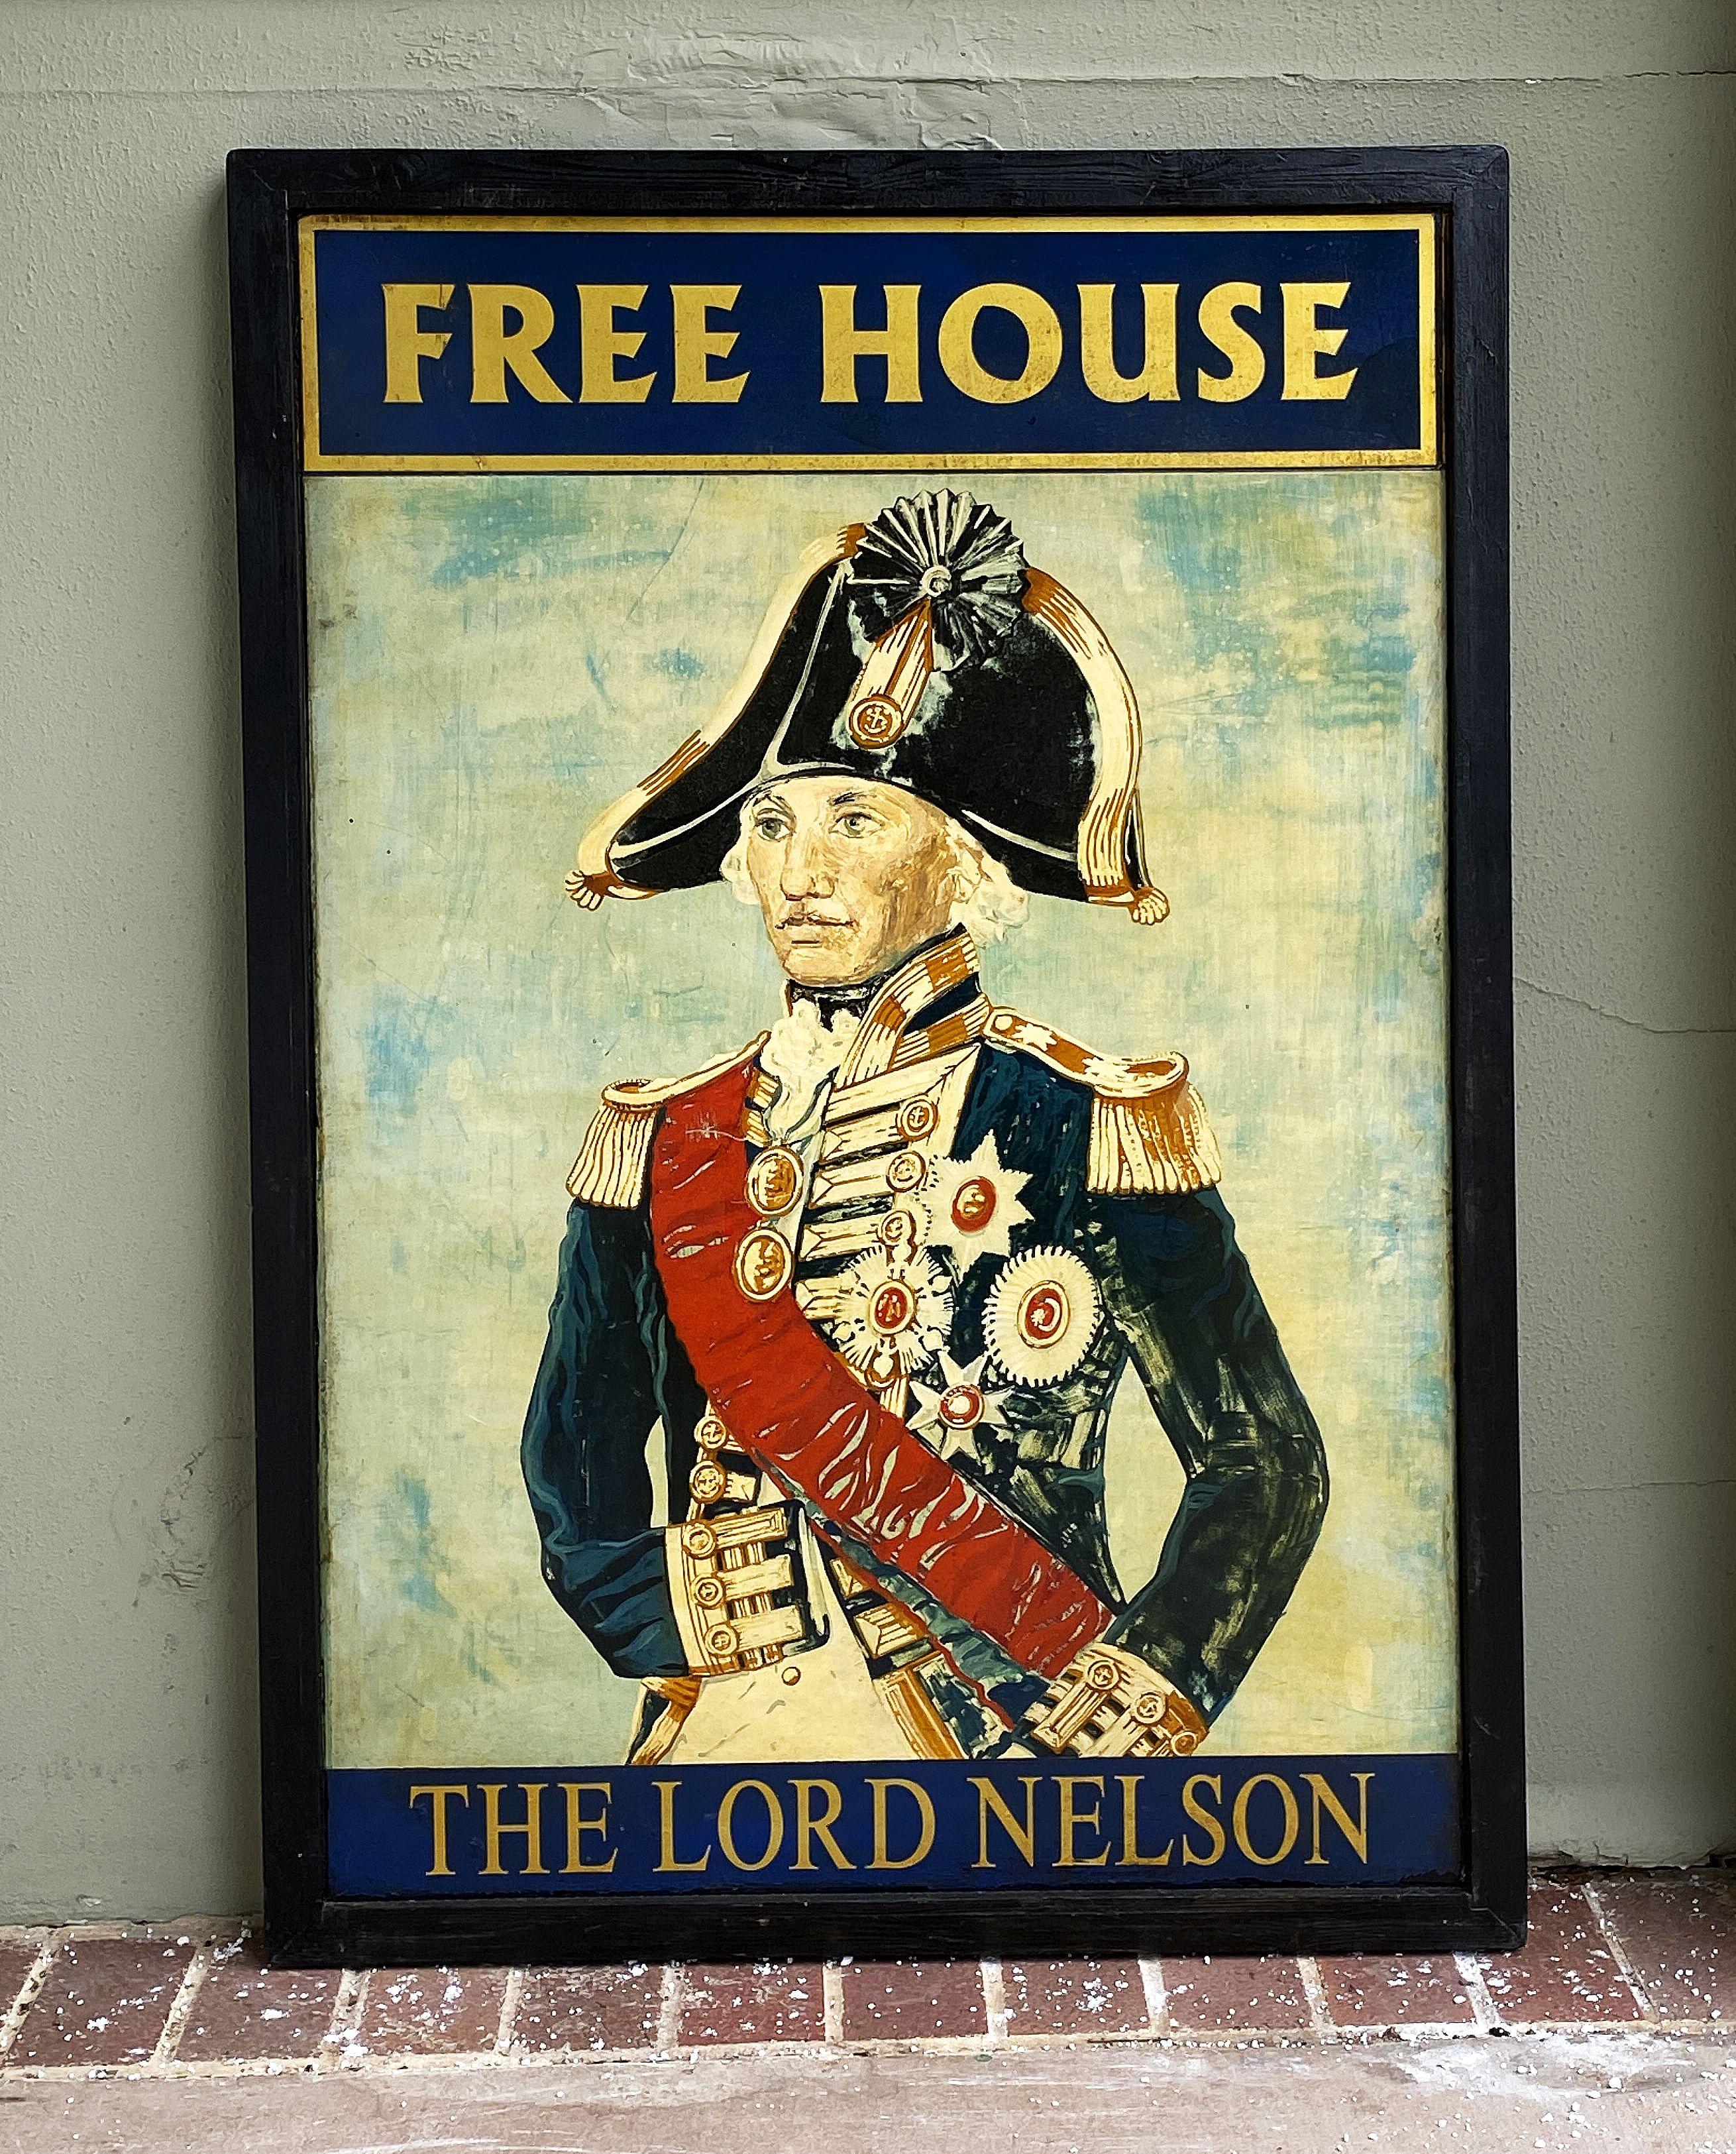 Ein authentisches englisches Kneipenschild (einseitig) mit einem Porträtgemälde von Lord Nelson in vollem Ornat und dem Titel: Free House - Der Lord Nelson.

Ein Free House in Großbritannien ist ein öffentliches Haus, das nicht von einer Brauerei